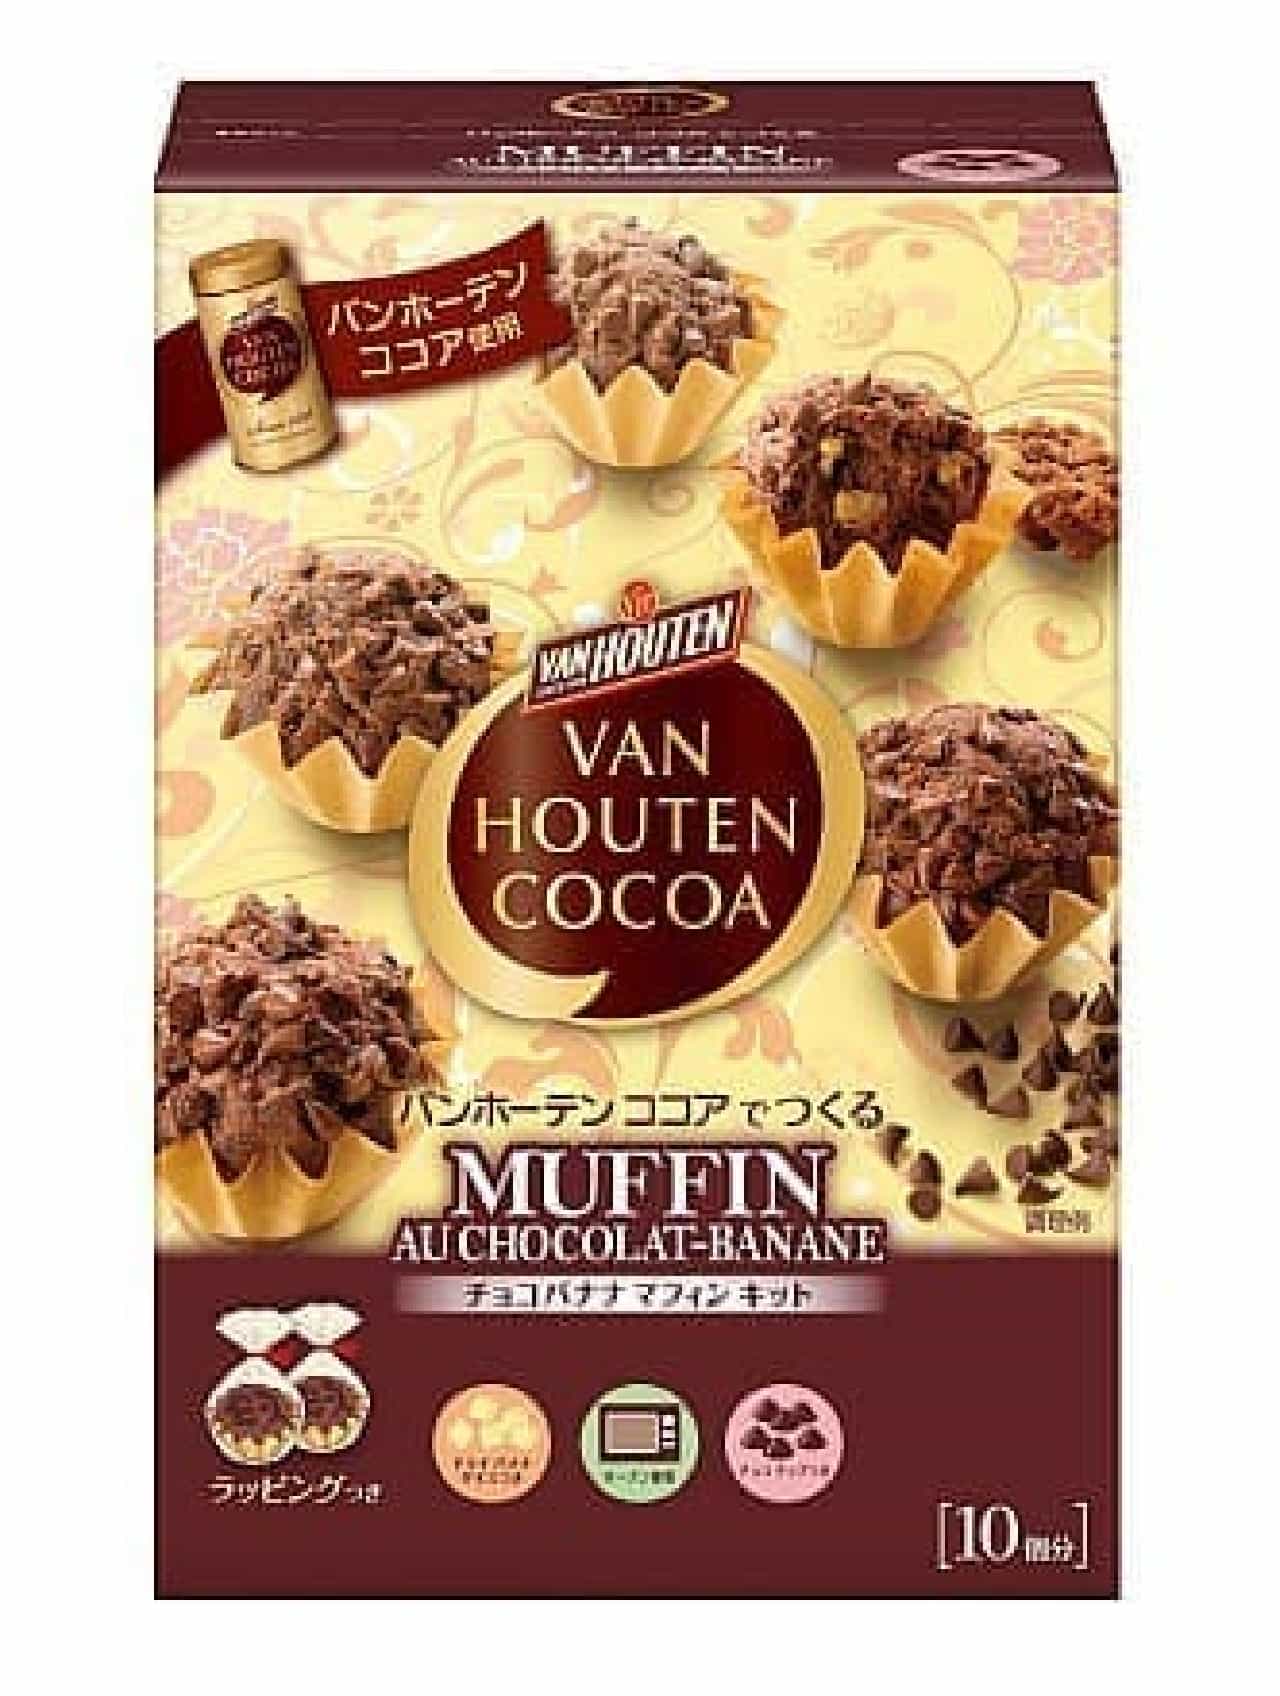 Chocolate banana muffin kit made from Van Houten cocoa